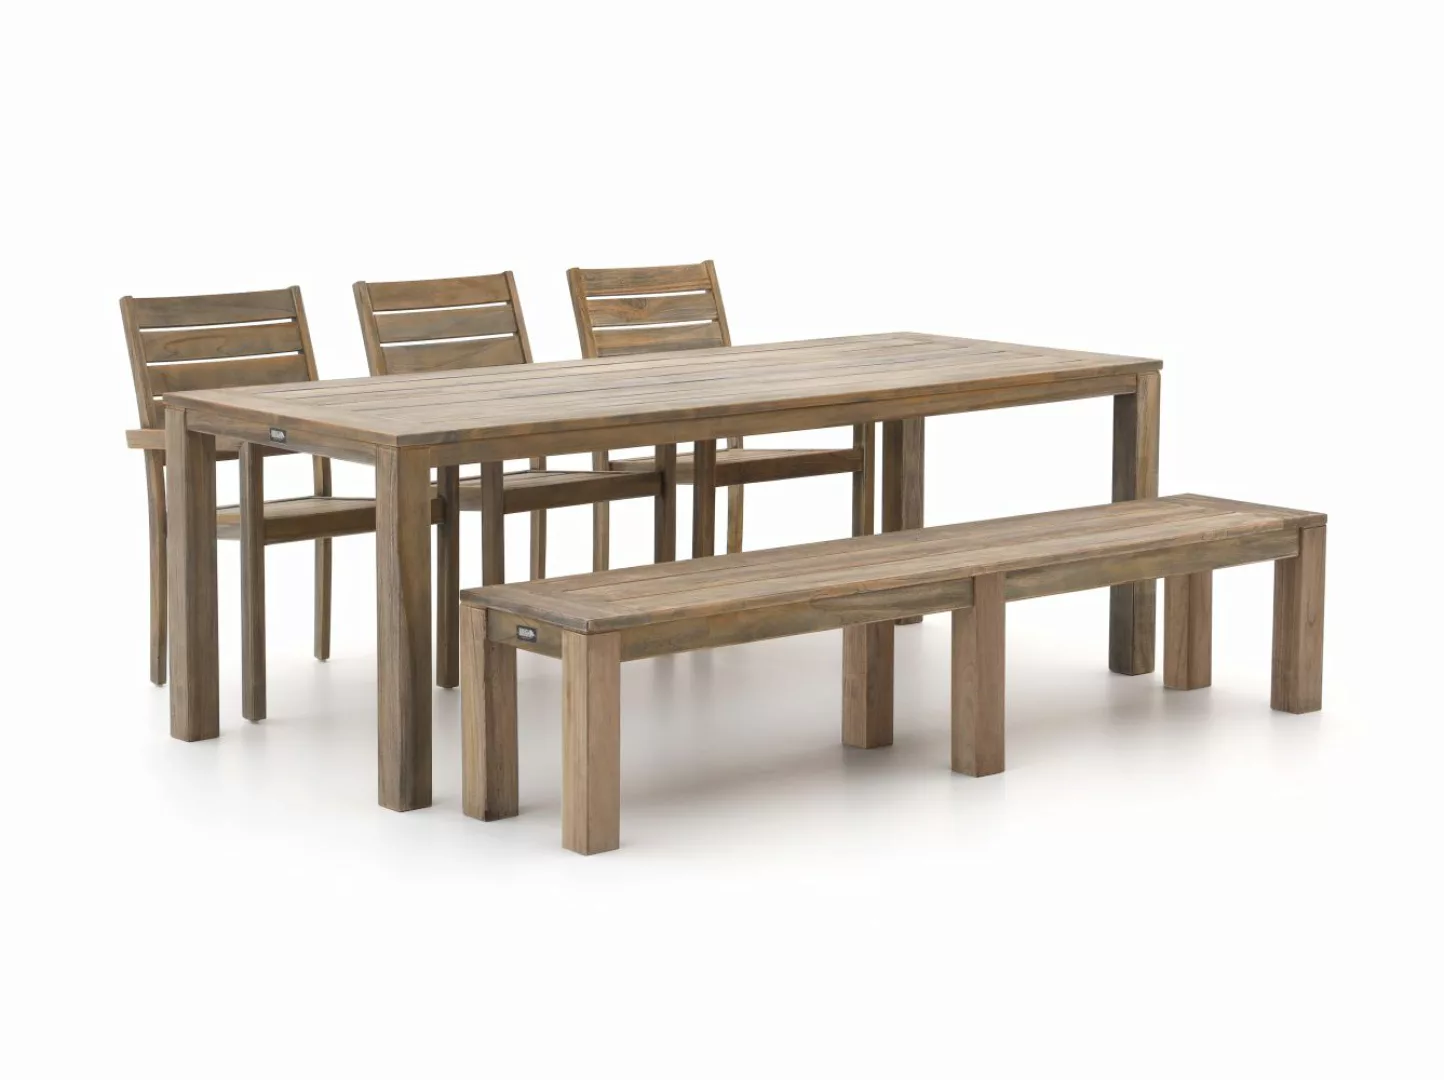 ROUGH-S 220 cm Gartenmöbel-Set mit Bank 5-teilig stapelbar günstig online kaufen